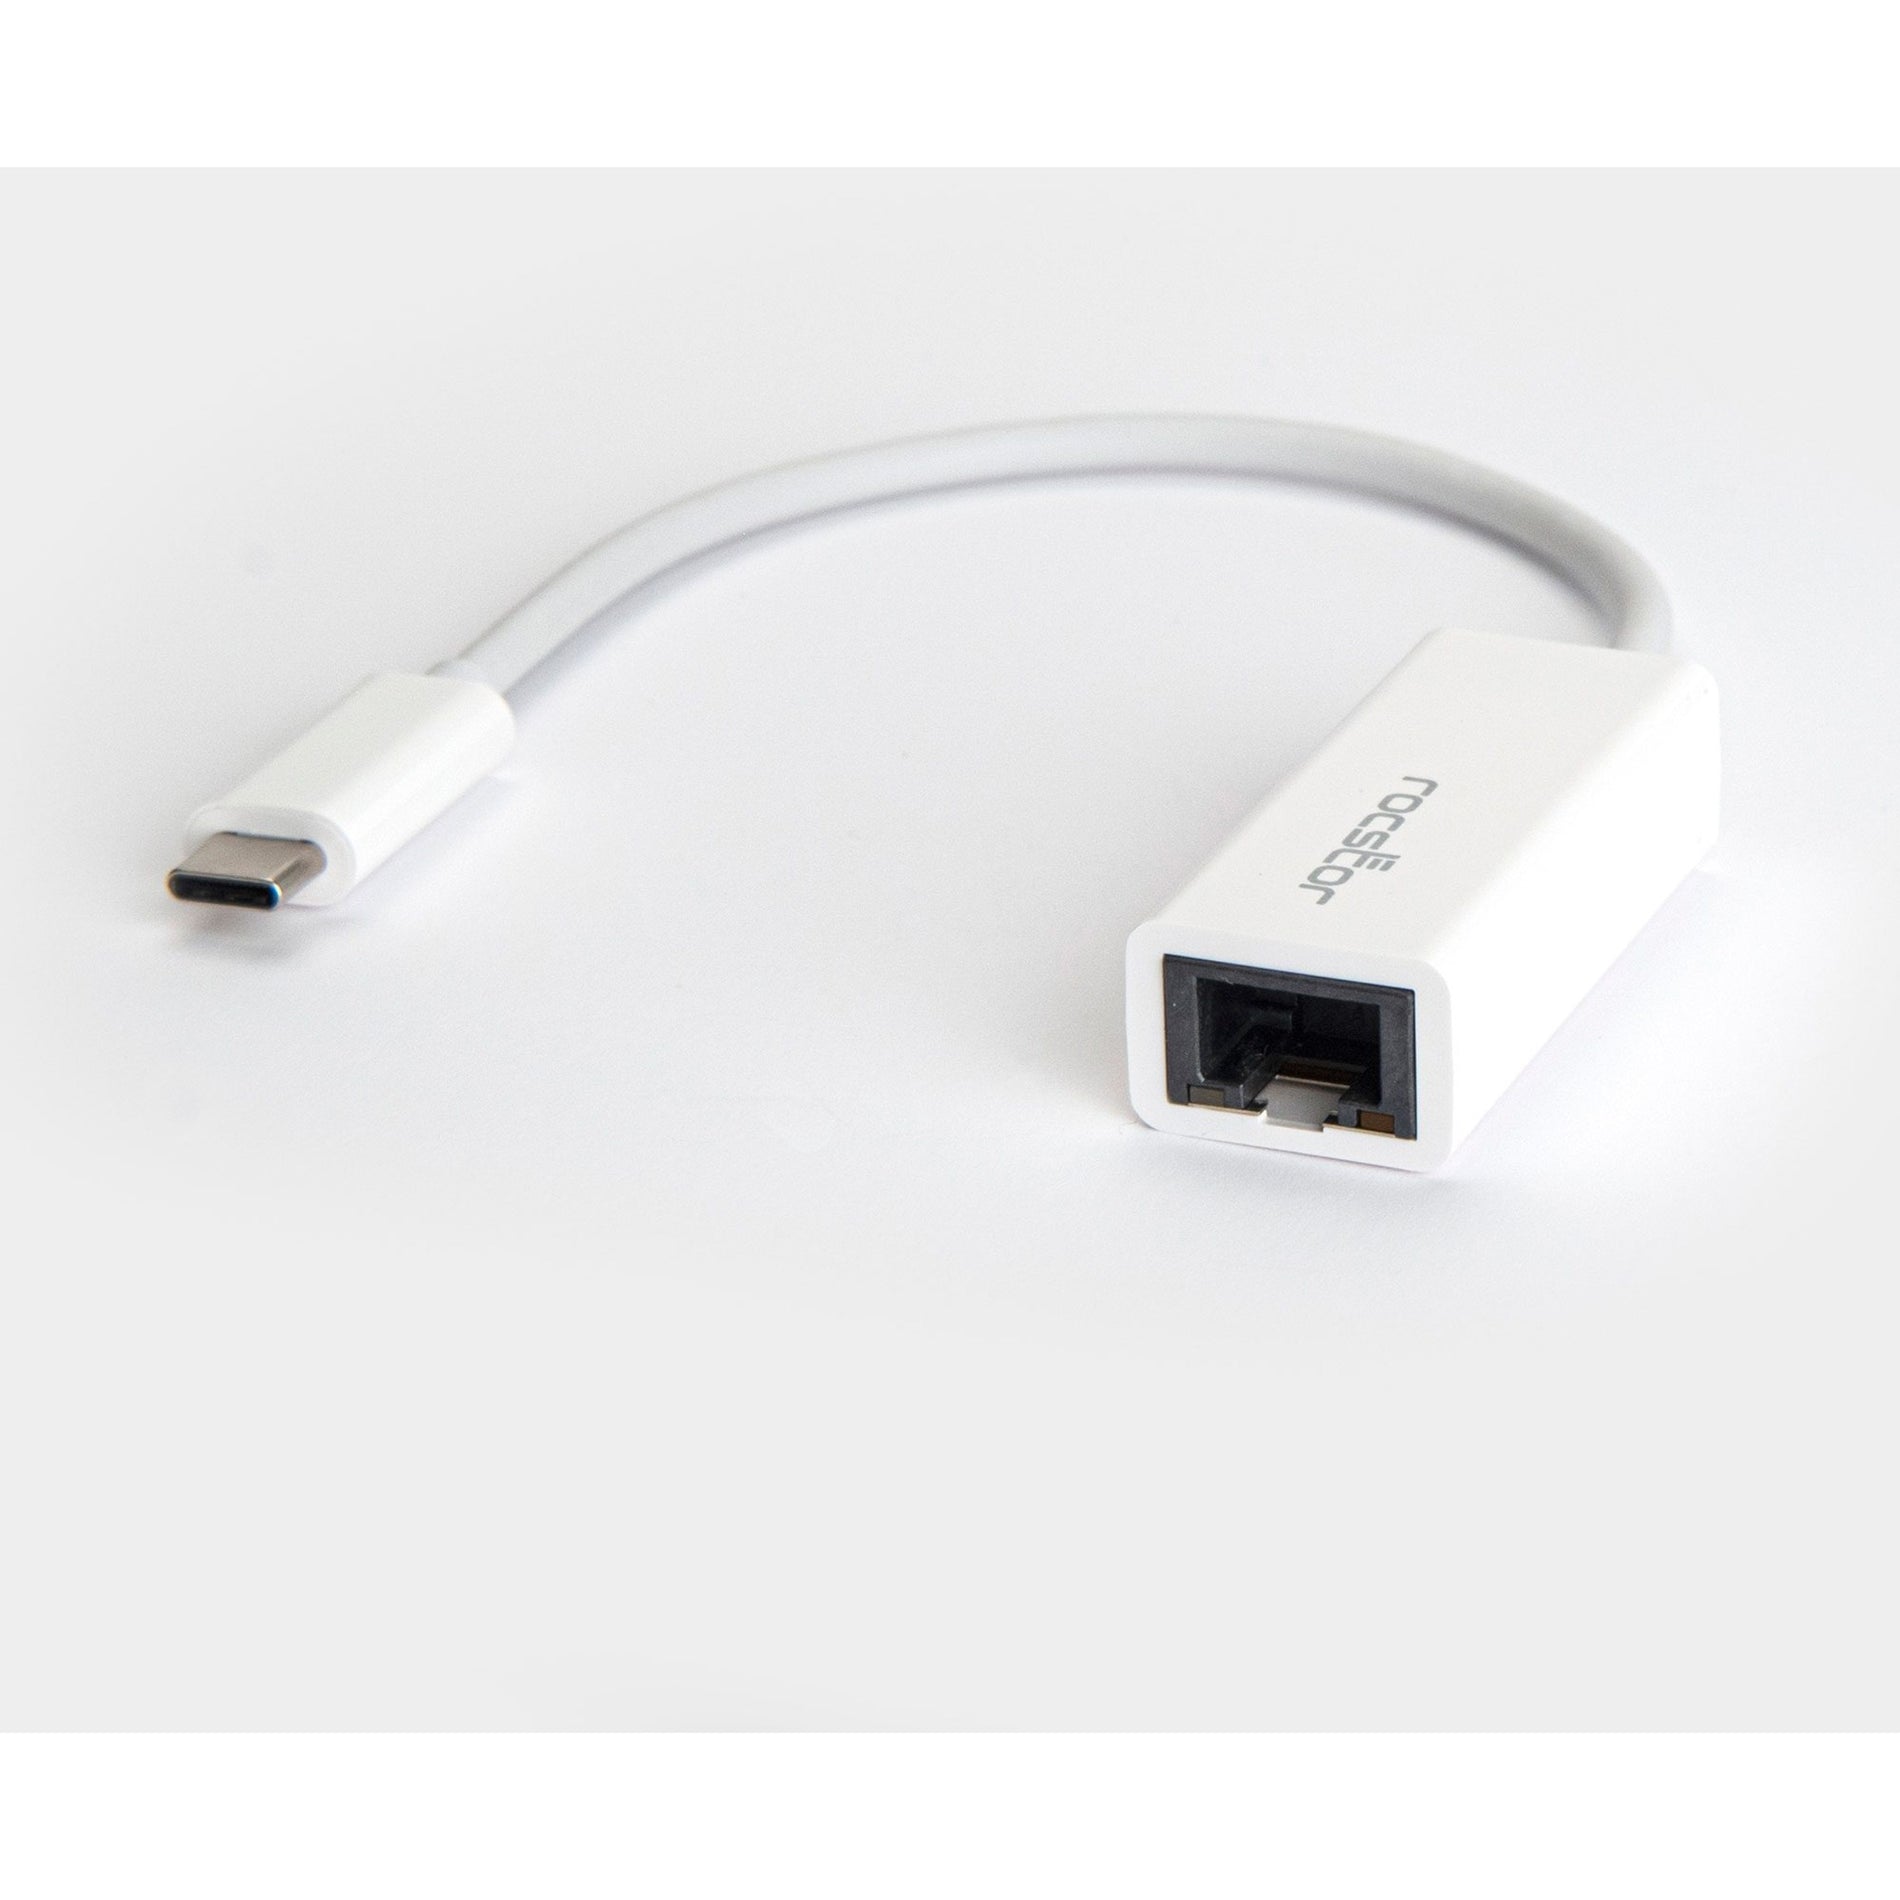 Rocstor Y10A173-W1 Adaptateur réseau USB-C Premium vers Gigabit 10/100/1000 - Blanc USB-C 3.1 vers Gigabit 1000Mbps